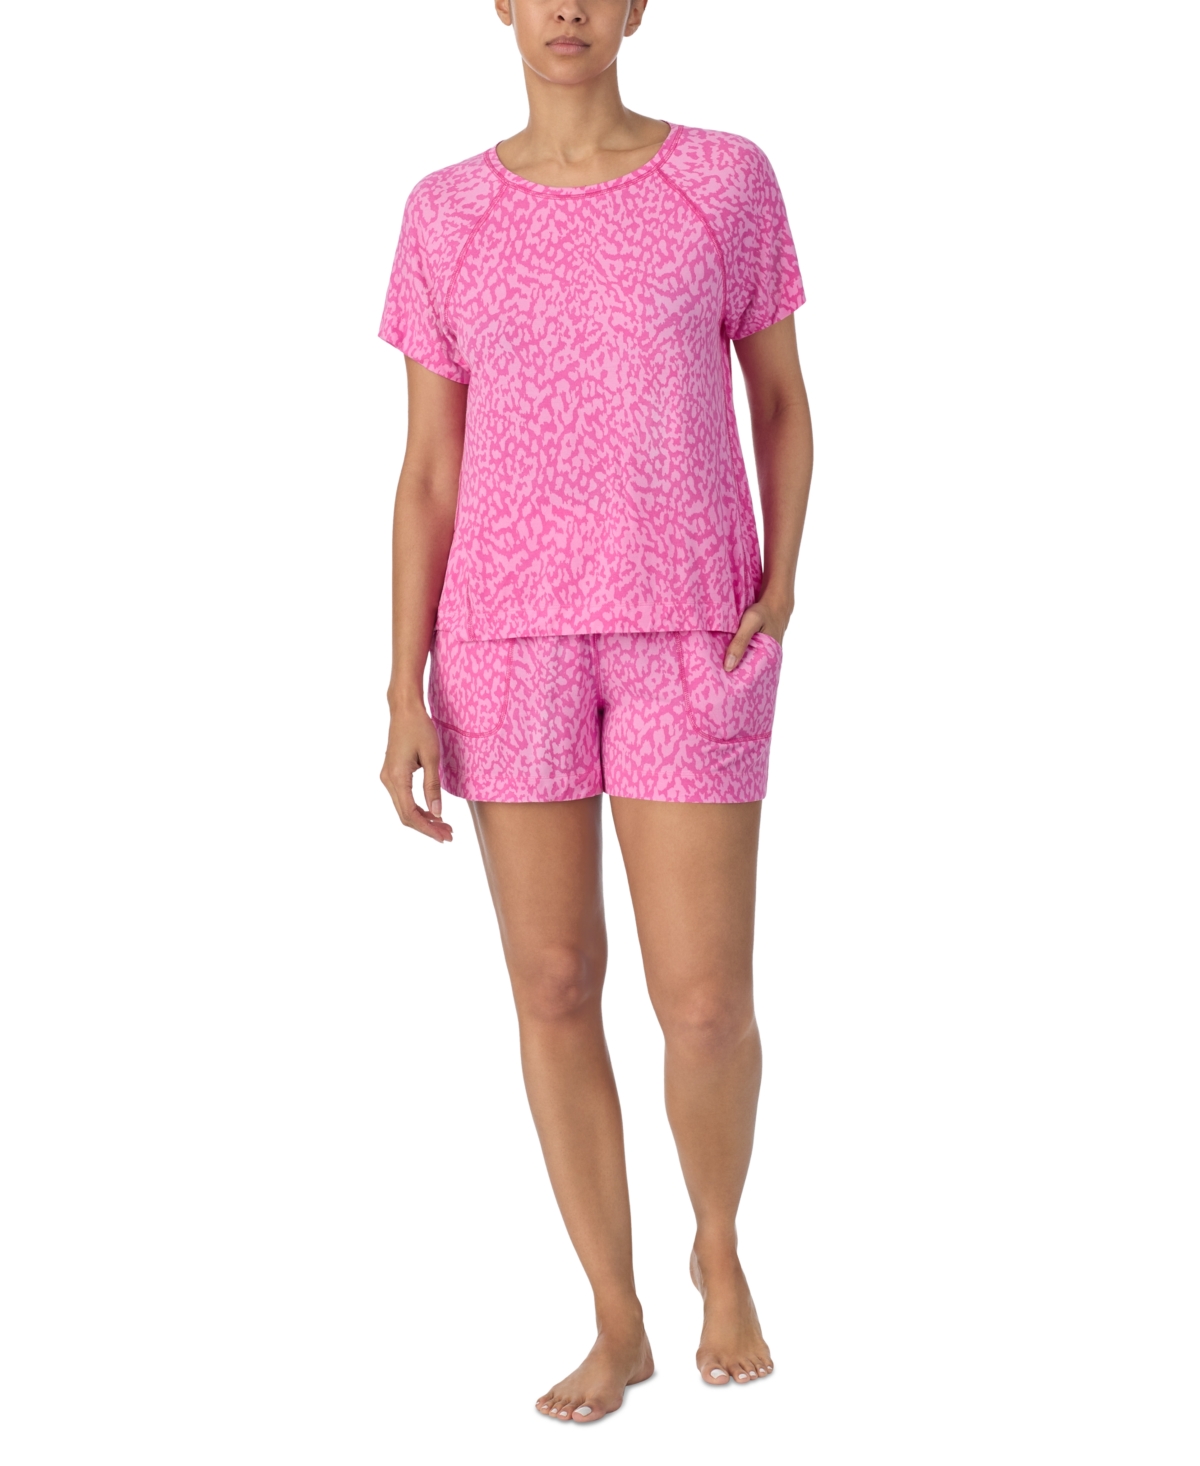 Women's 2-Pc. Printed Boxer Pajamas Set - Pink Print